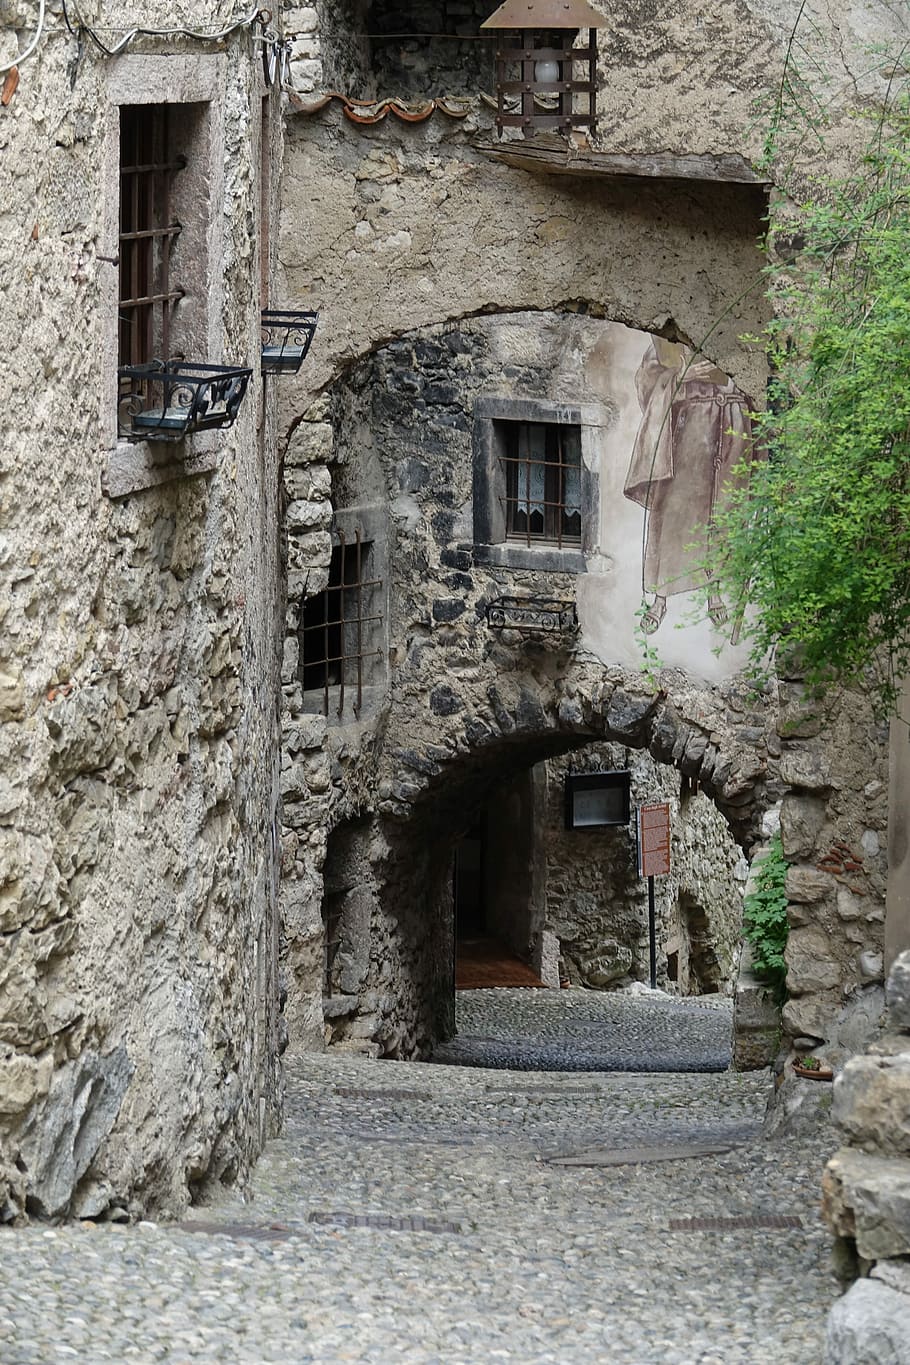 Italia, Desa, Trentino, bahan batu, arsitektur, sejarah, abad pertengahan, pintu, kota, struktur yang dibangun